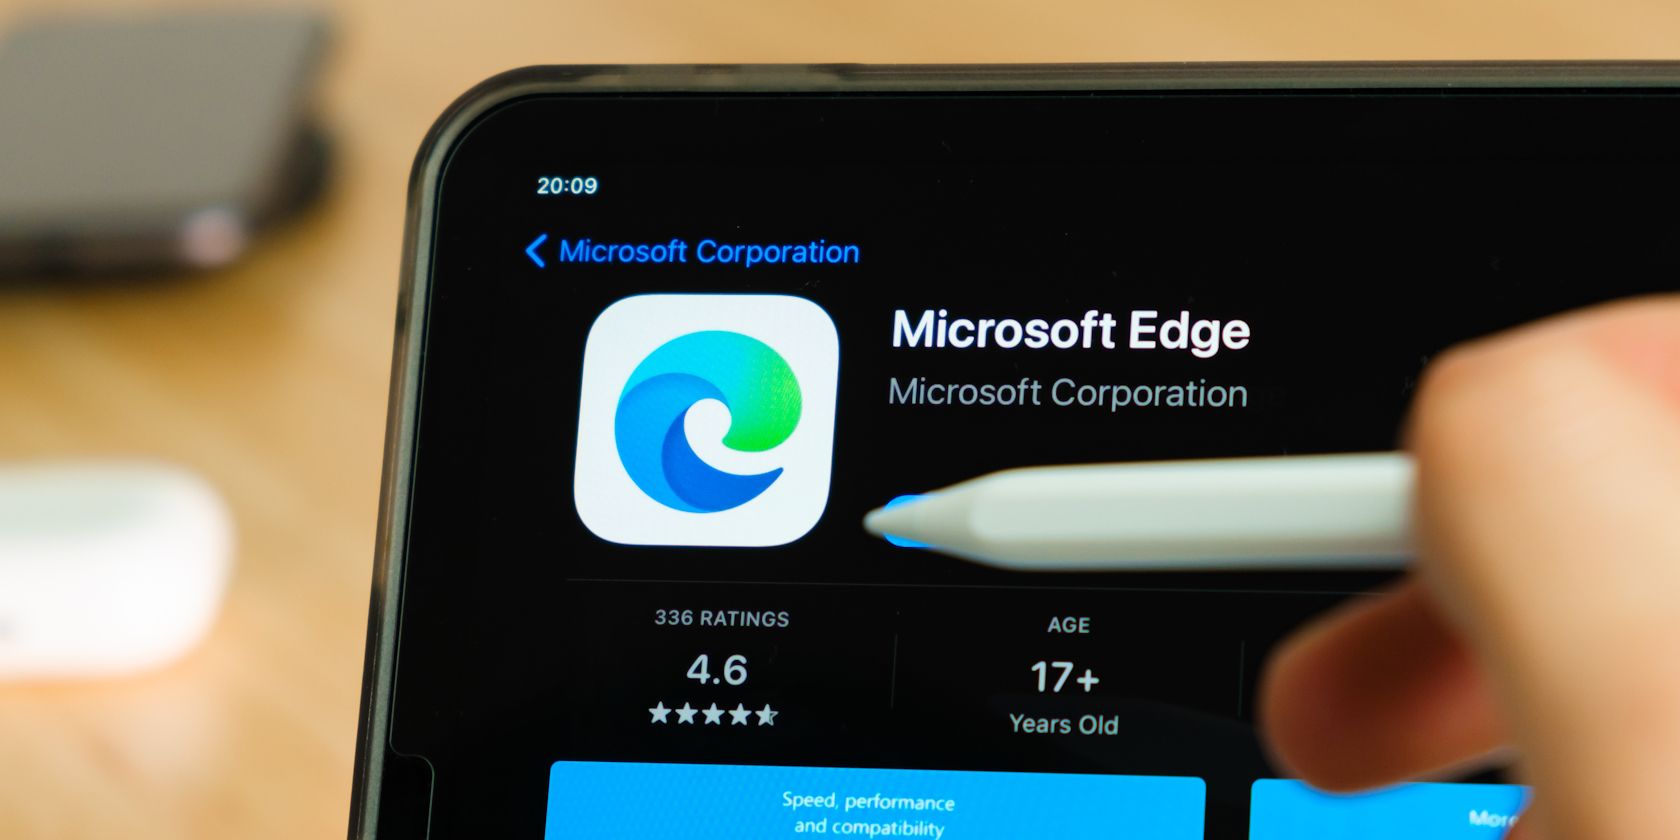 person pressing microsoft edge logo on smartphone screen